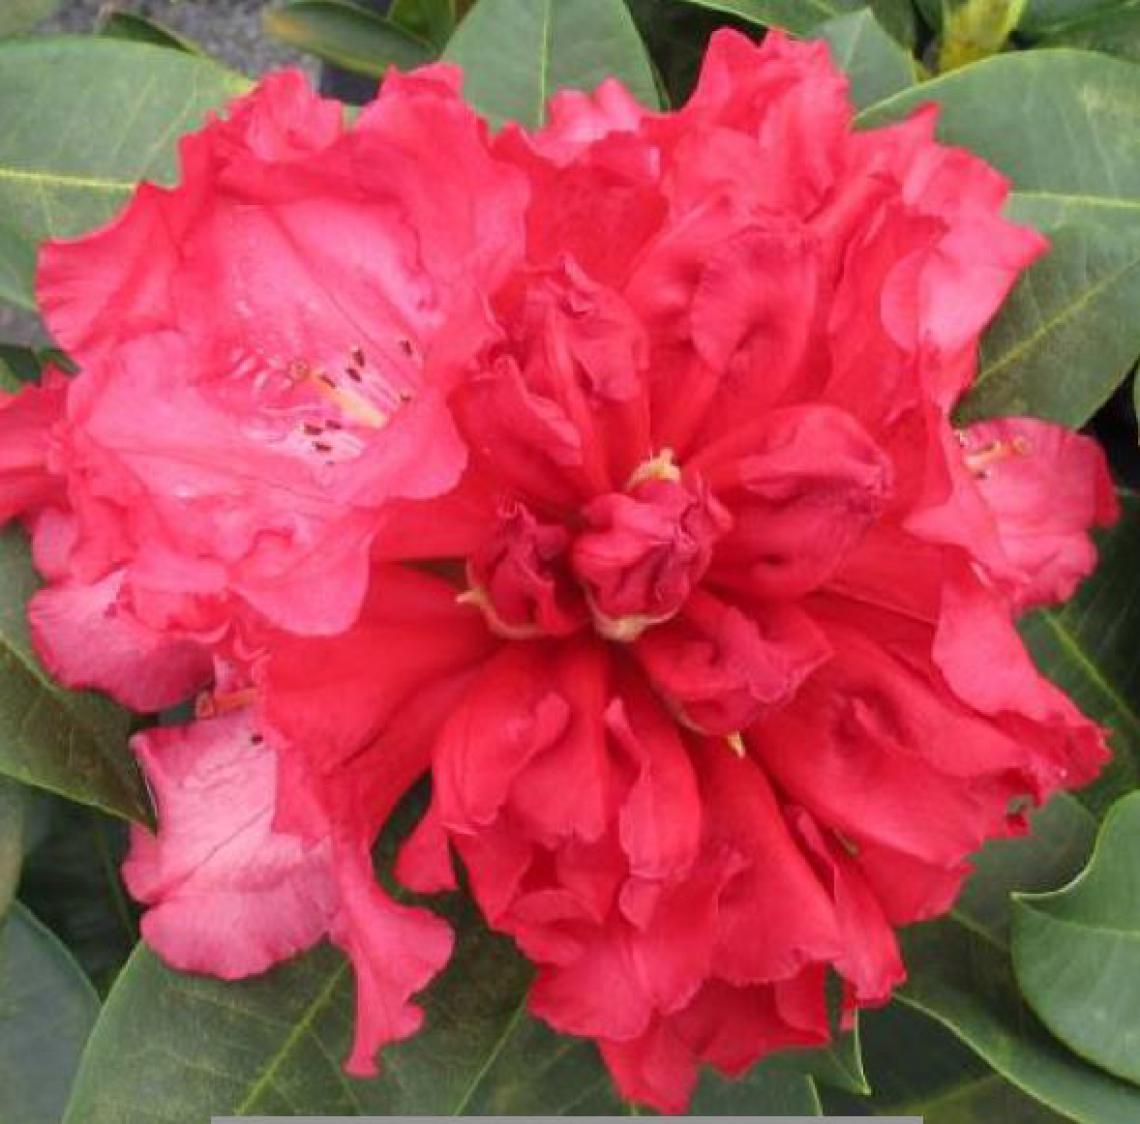 Rhododendron 'Cunningham's White' - Immergrun / Garden Center Eshop - photo 8